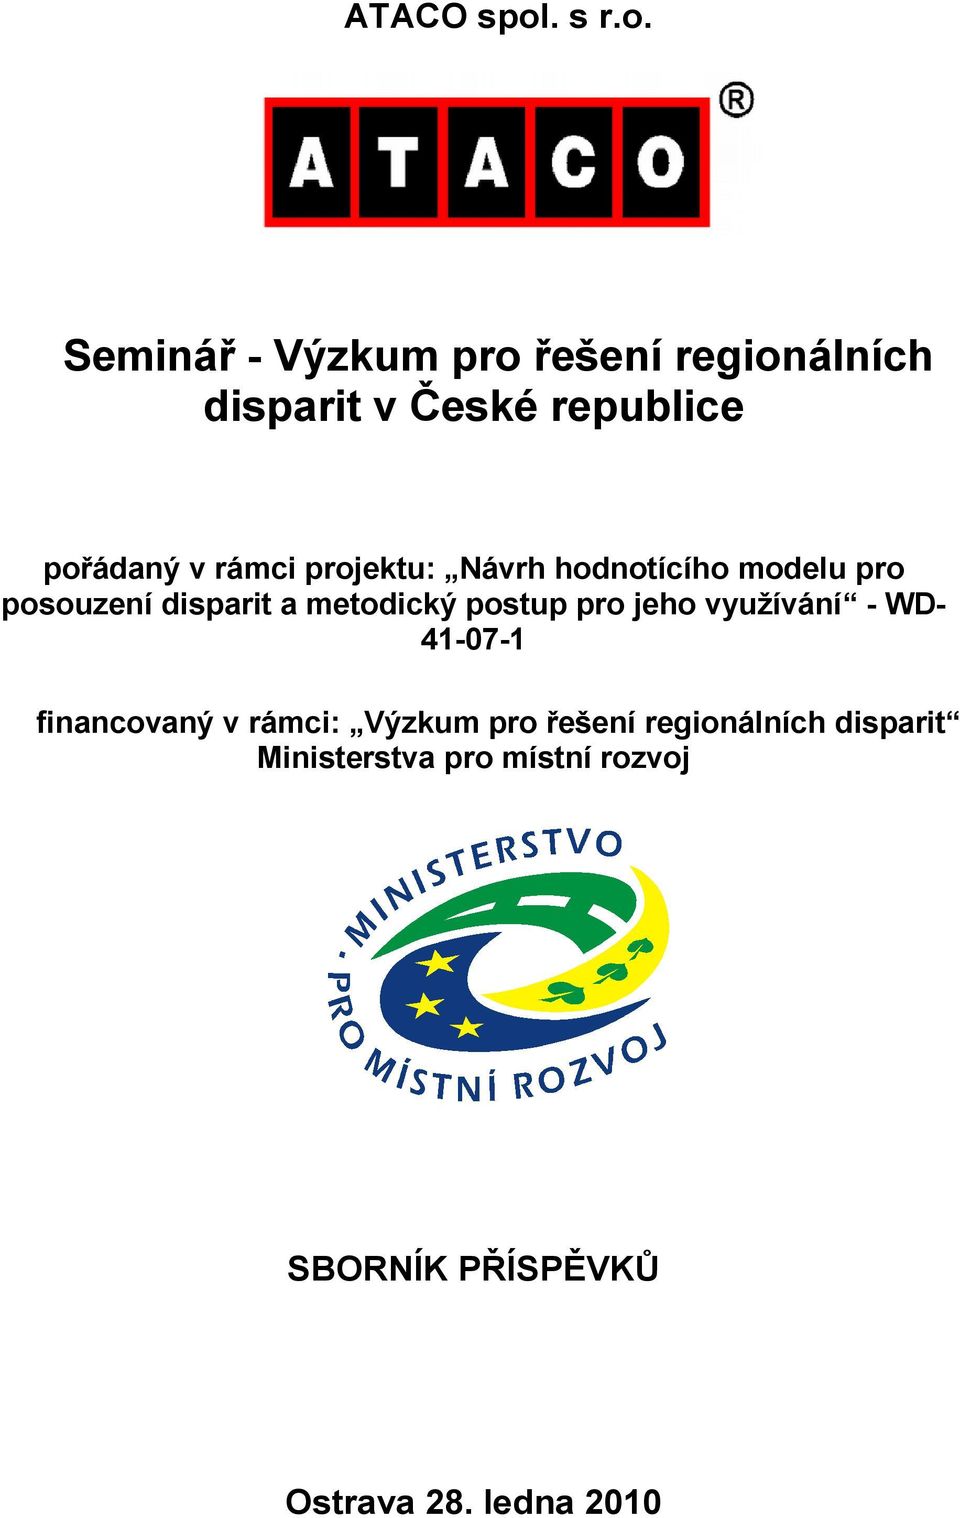 Seminář - Výzkum pro řešení regionálních disparit v České republice pořádaný v rámci